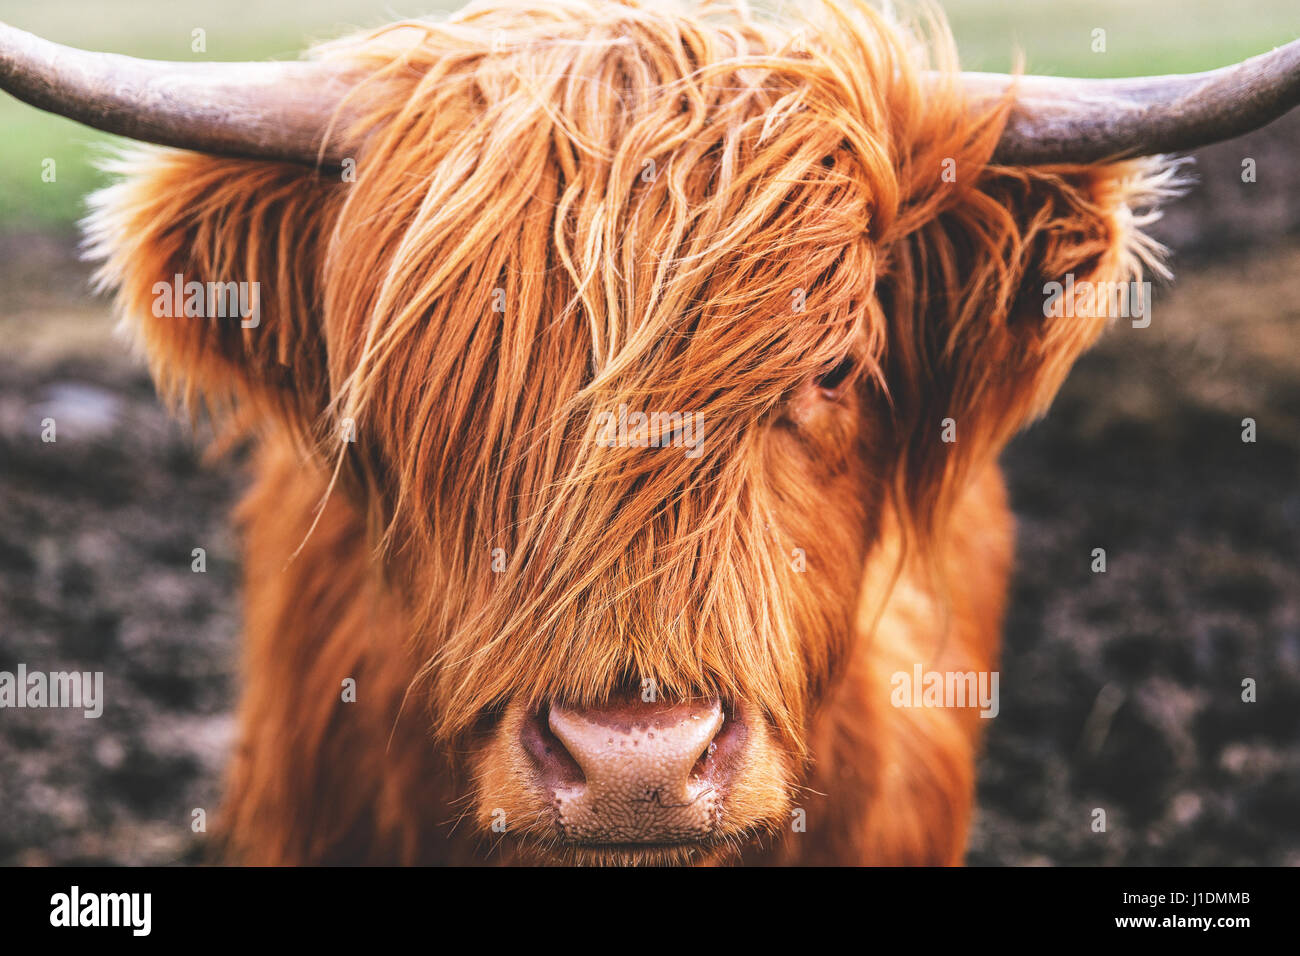 Vache Highland cattle en Ecosse Banque D'Images